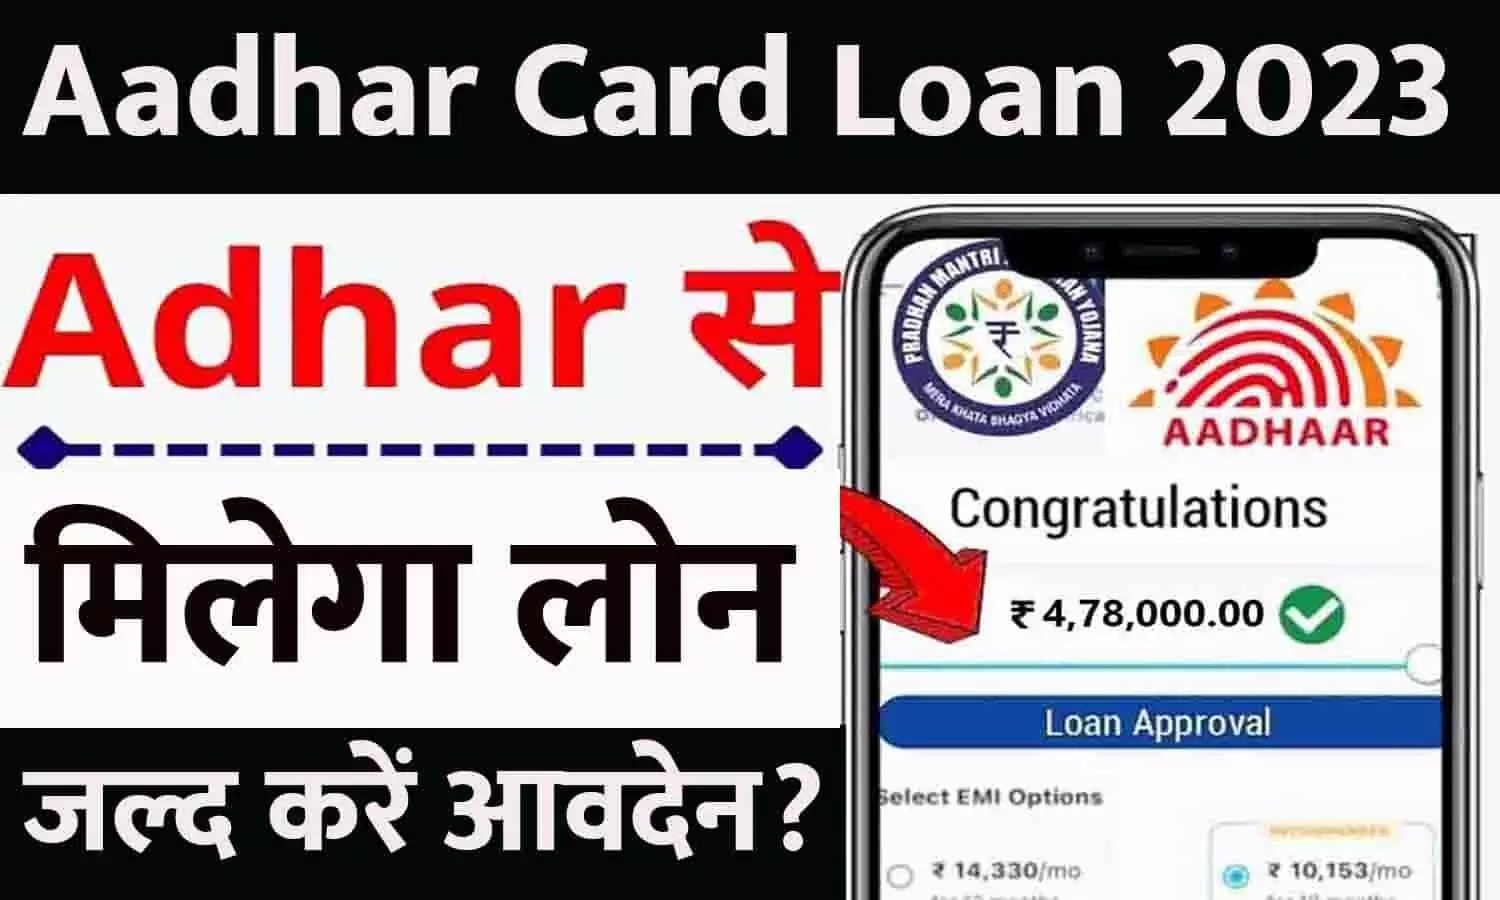 Aadhaar Card Loan